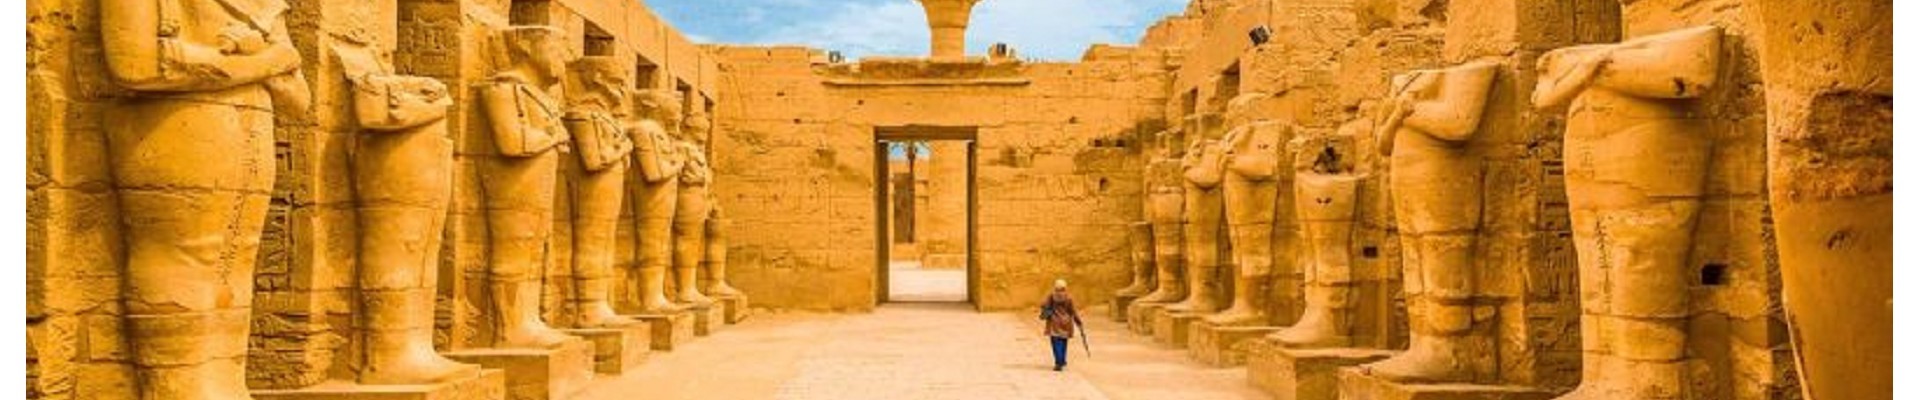 Viaggio in Egitto e Nubia